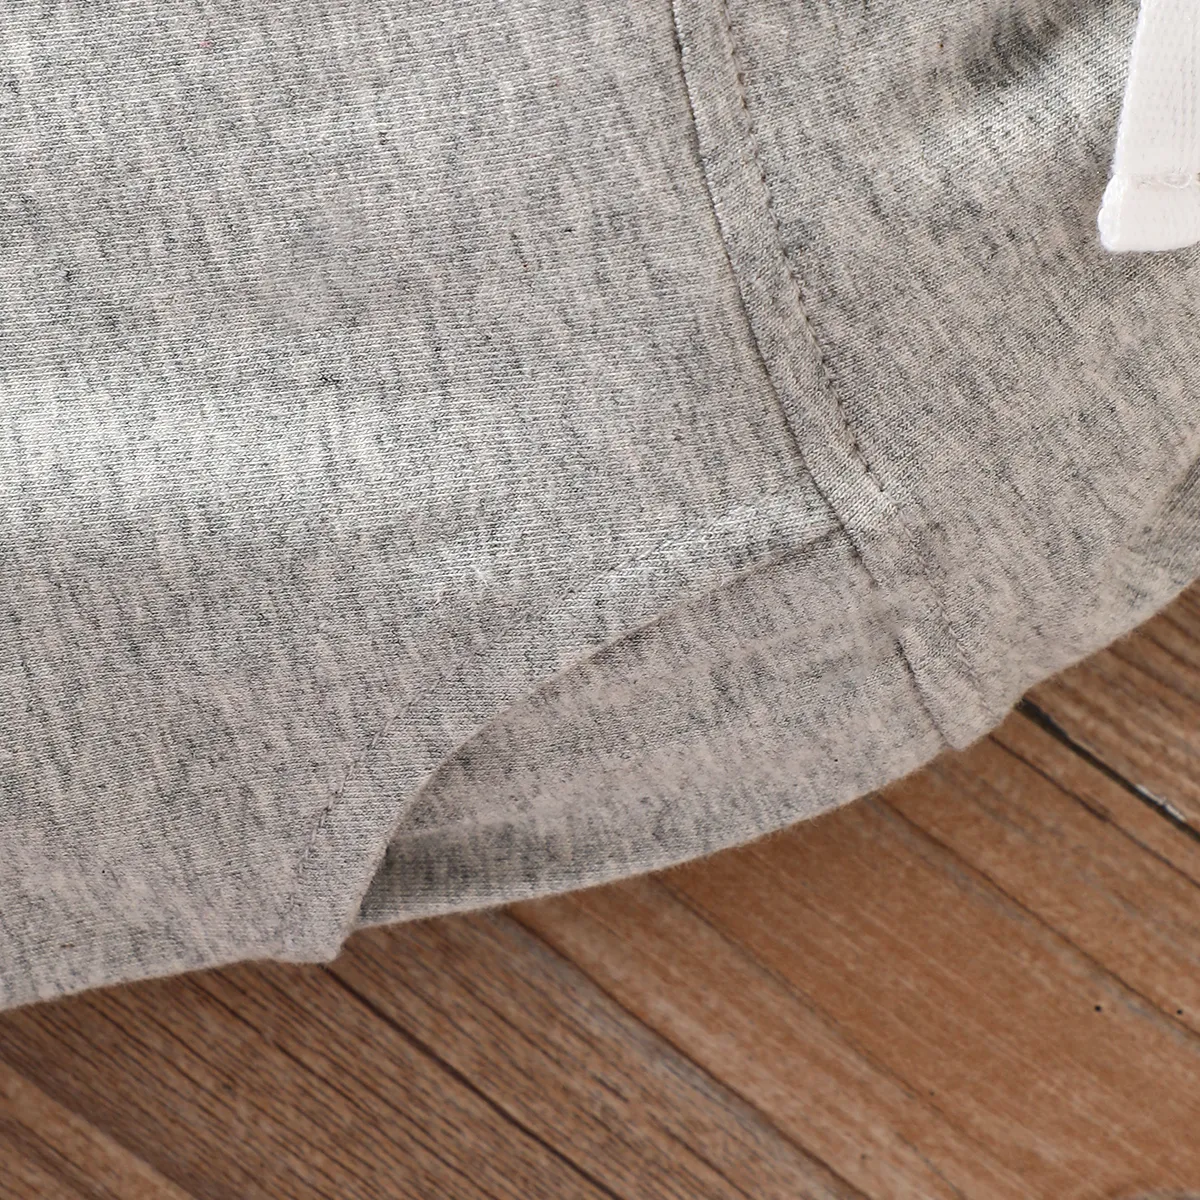 2pcs Baby Boy 95% Cotton Pocket Short-sleeve Tee and Elasticized Shorts Set Grey big image 1